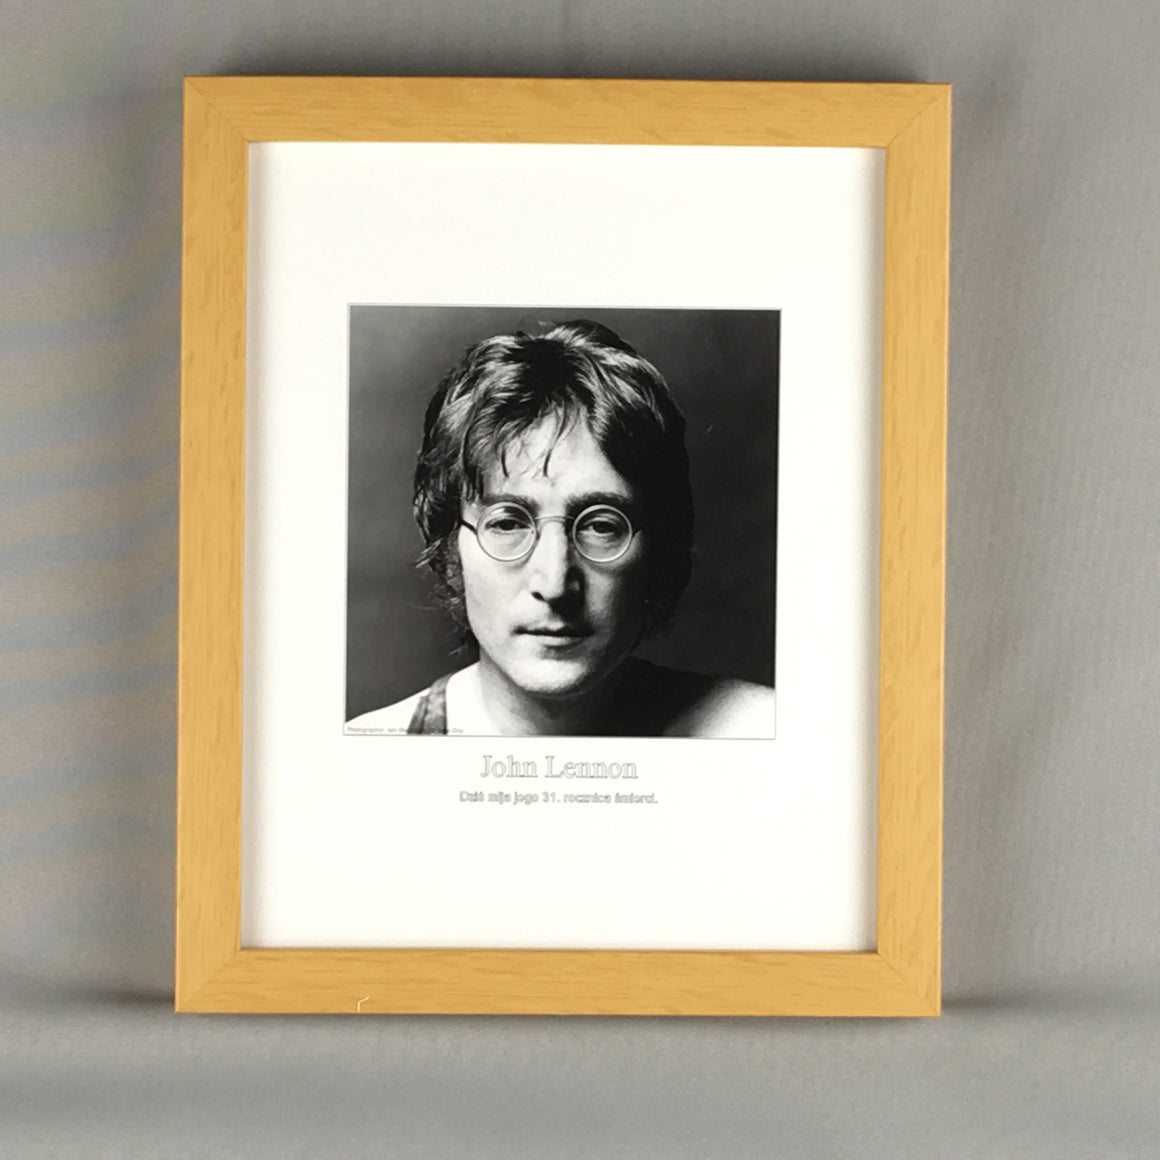 John Lennon Framed Art Print - 10" X 12" - Quality Wood Frame